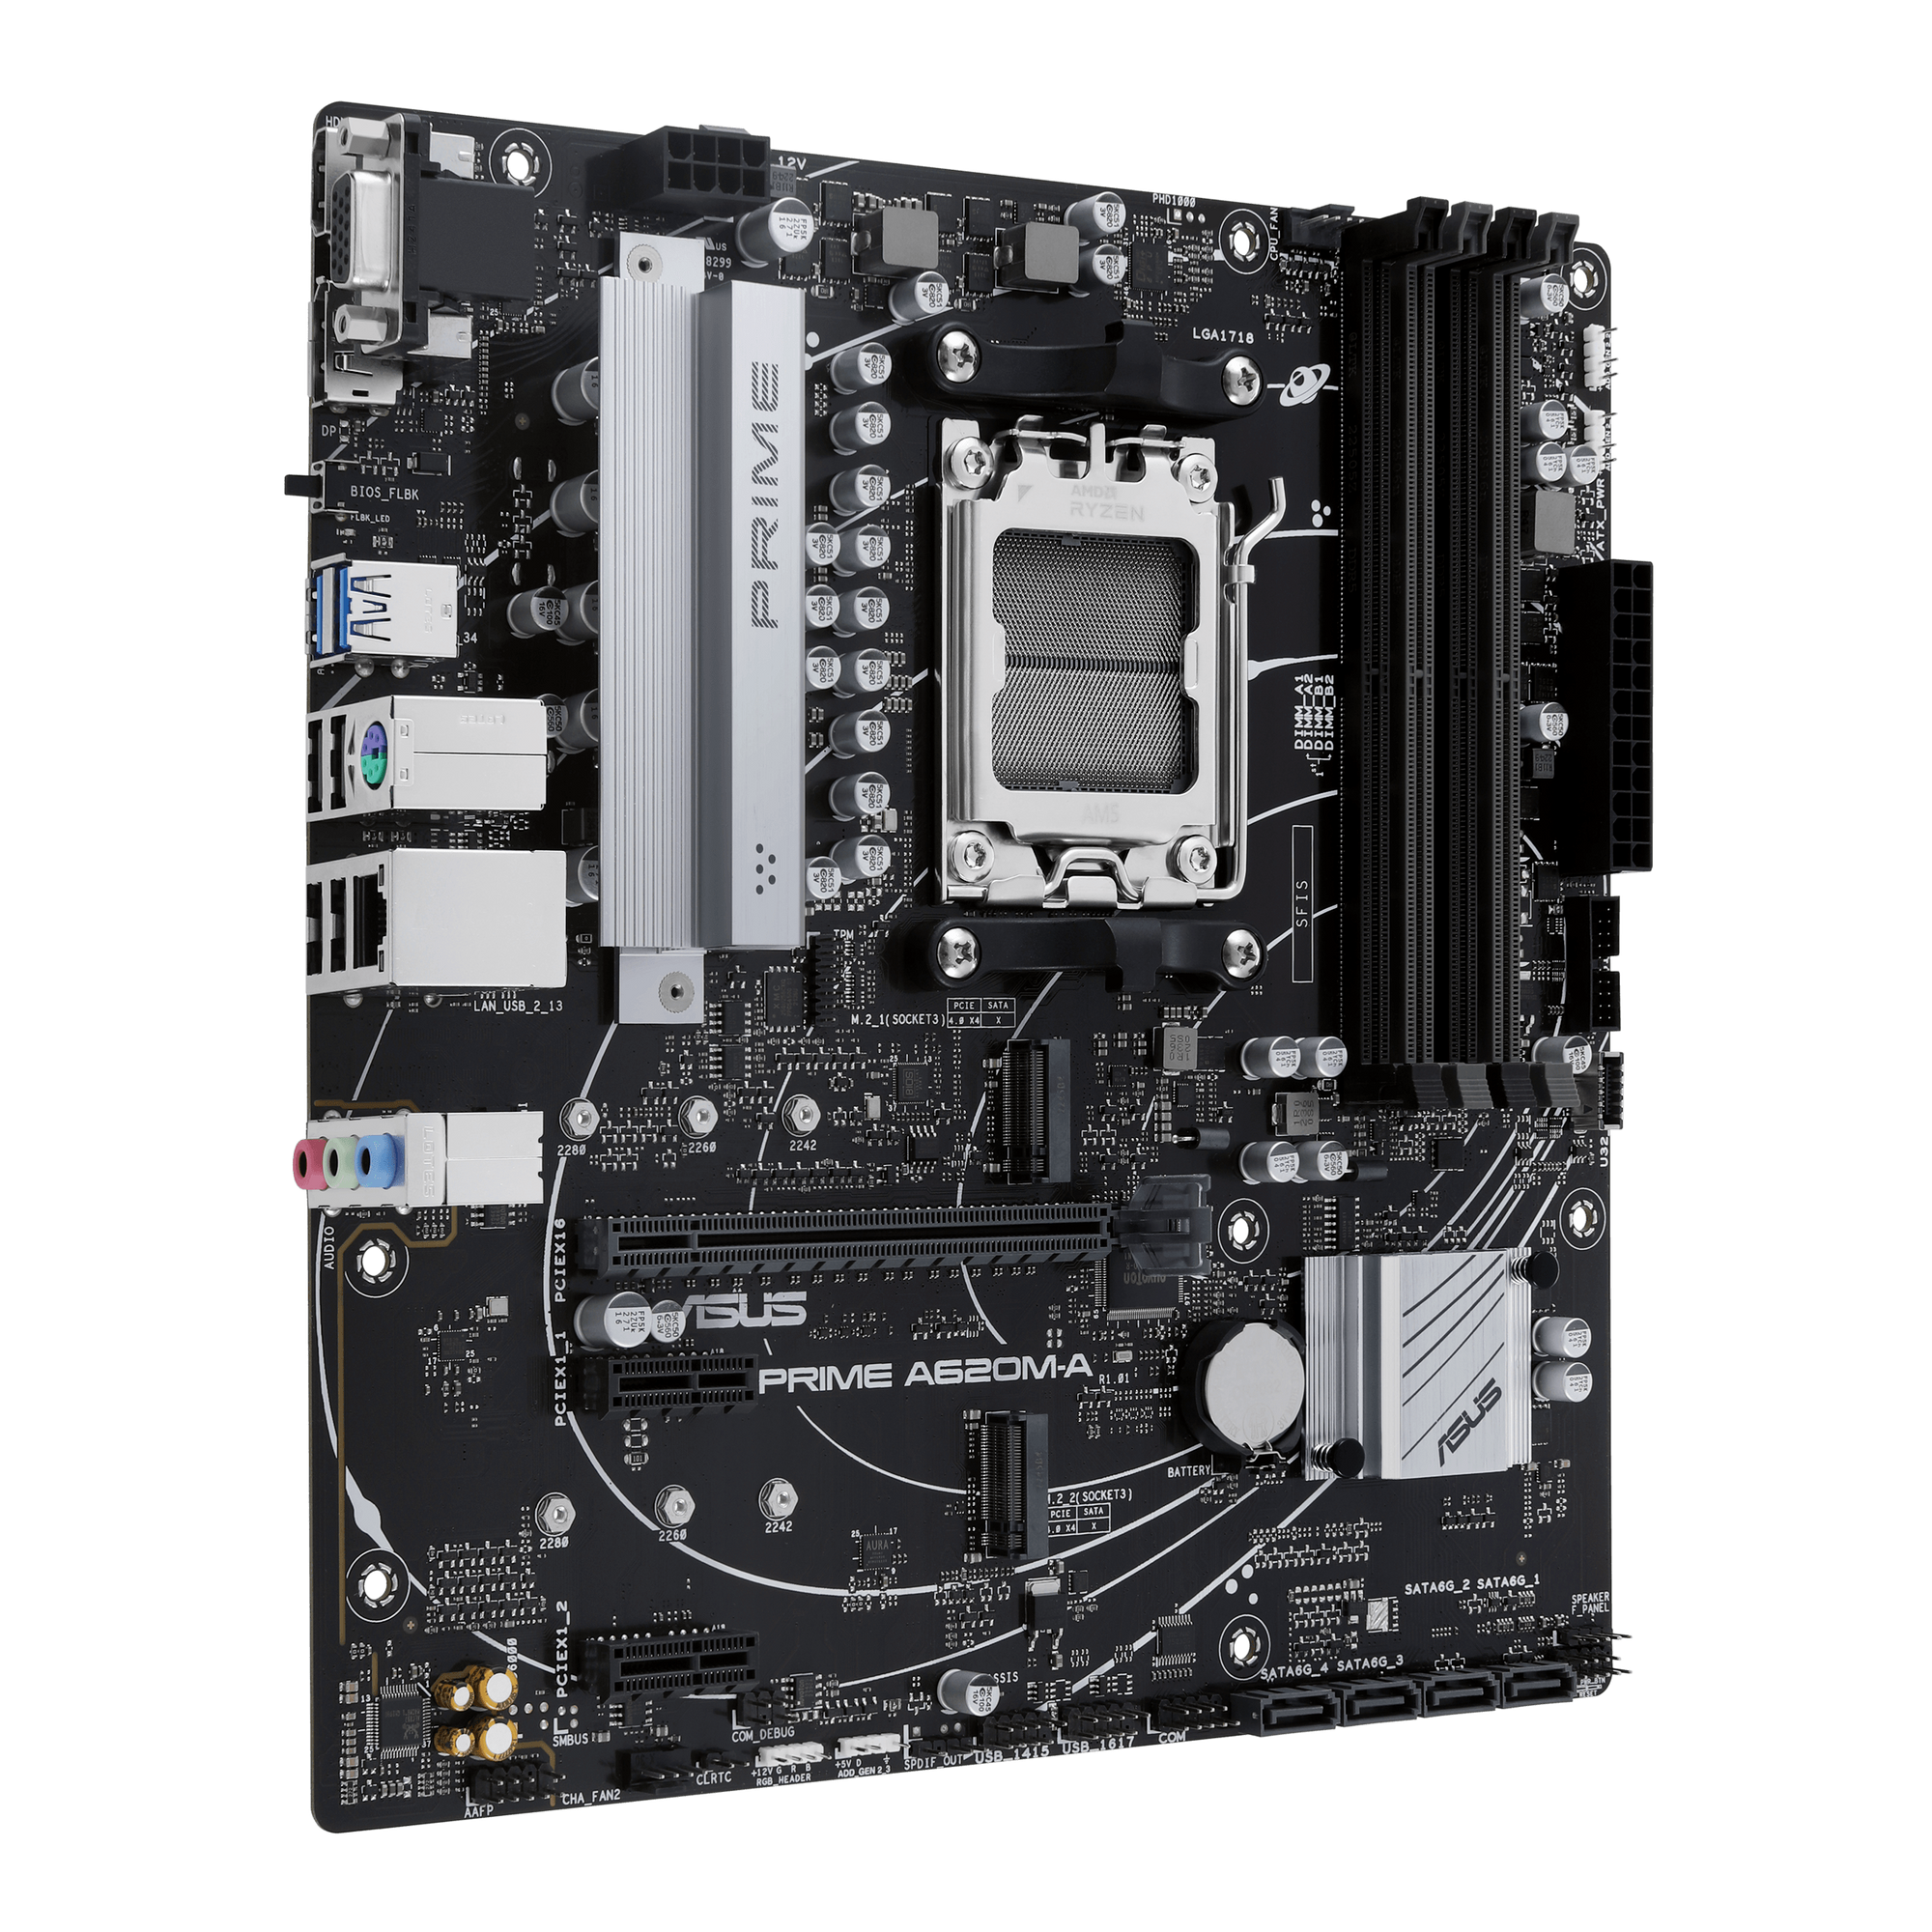 ASUS Prime A620M-A-CSM Mainboard Sockel AMD A620 2